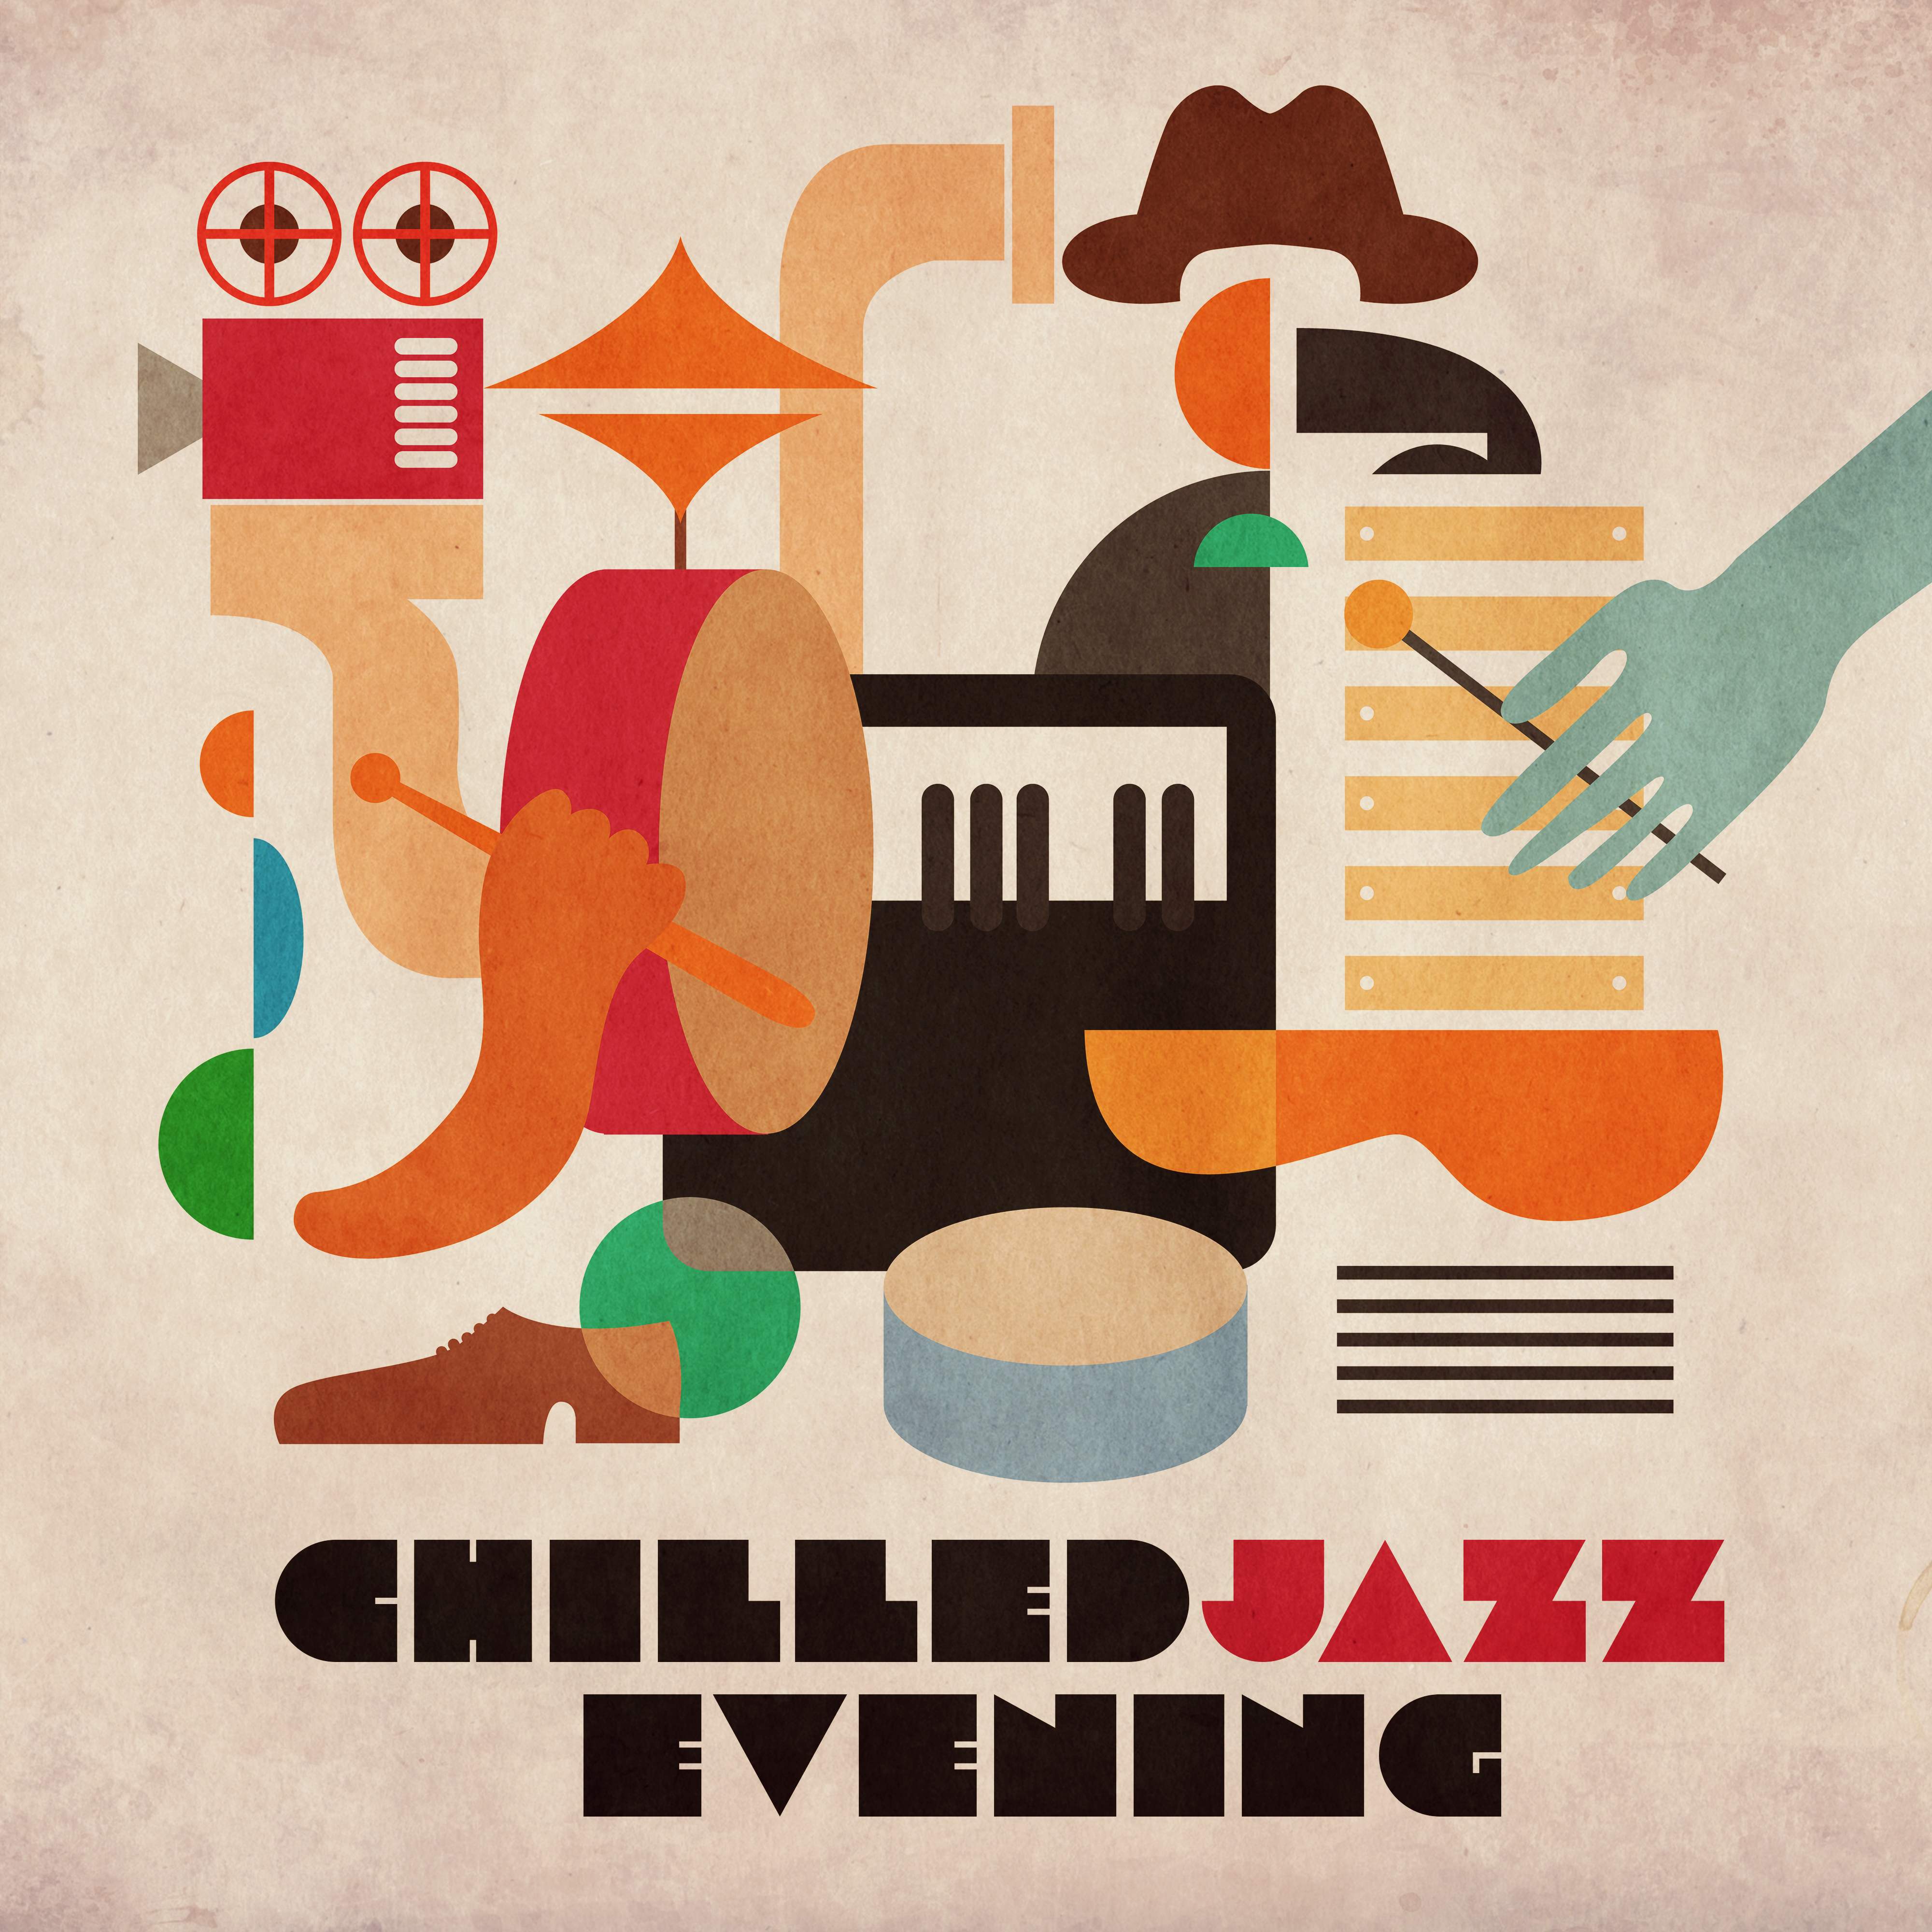 Chilled Jazz Evening